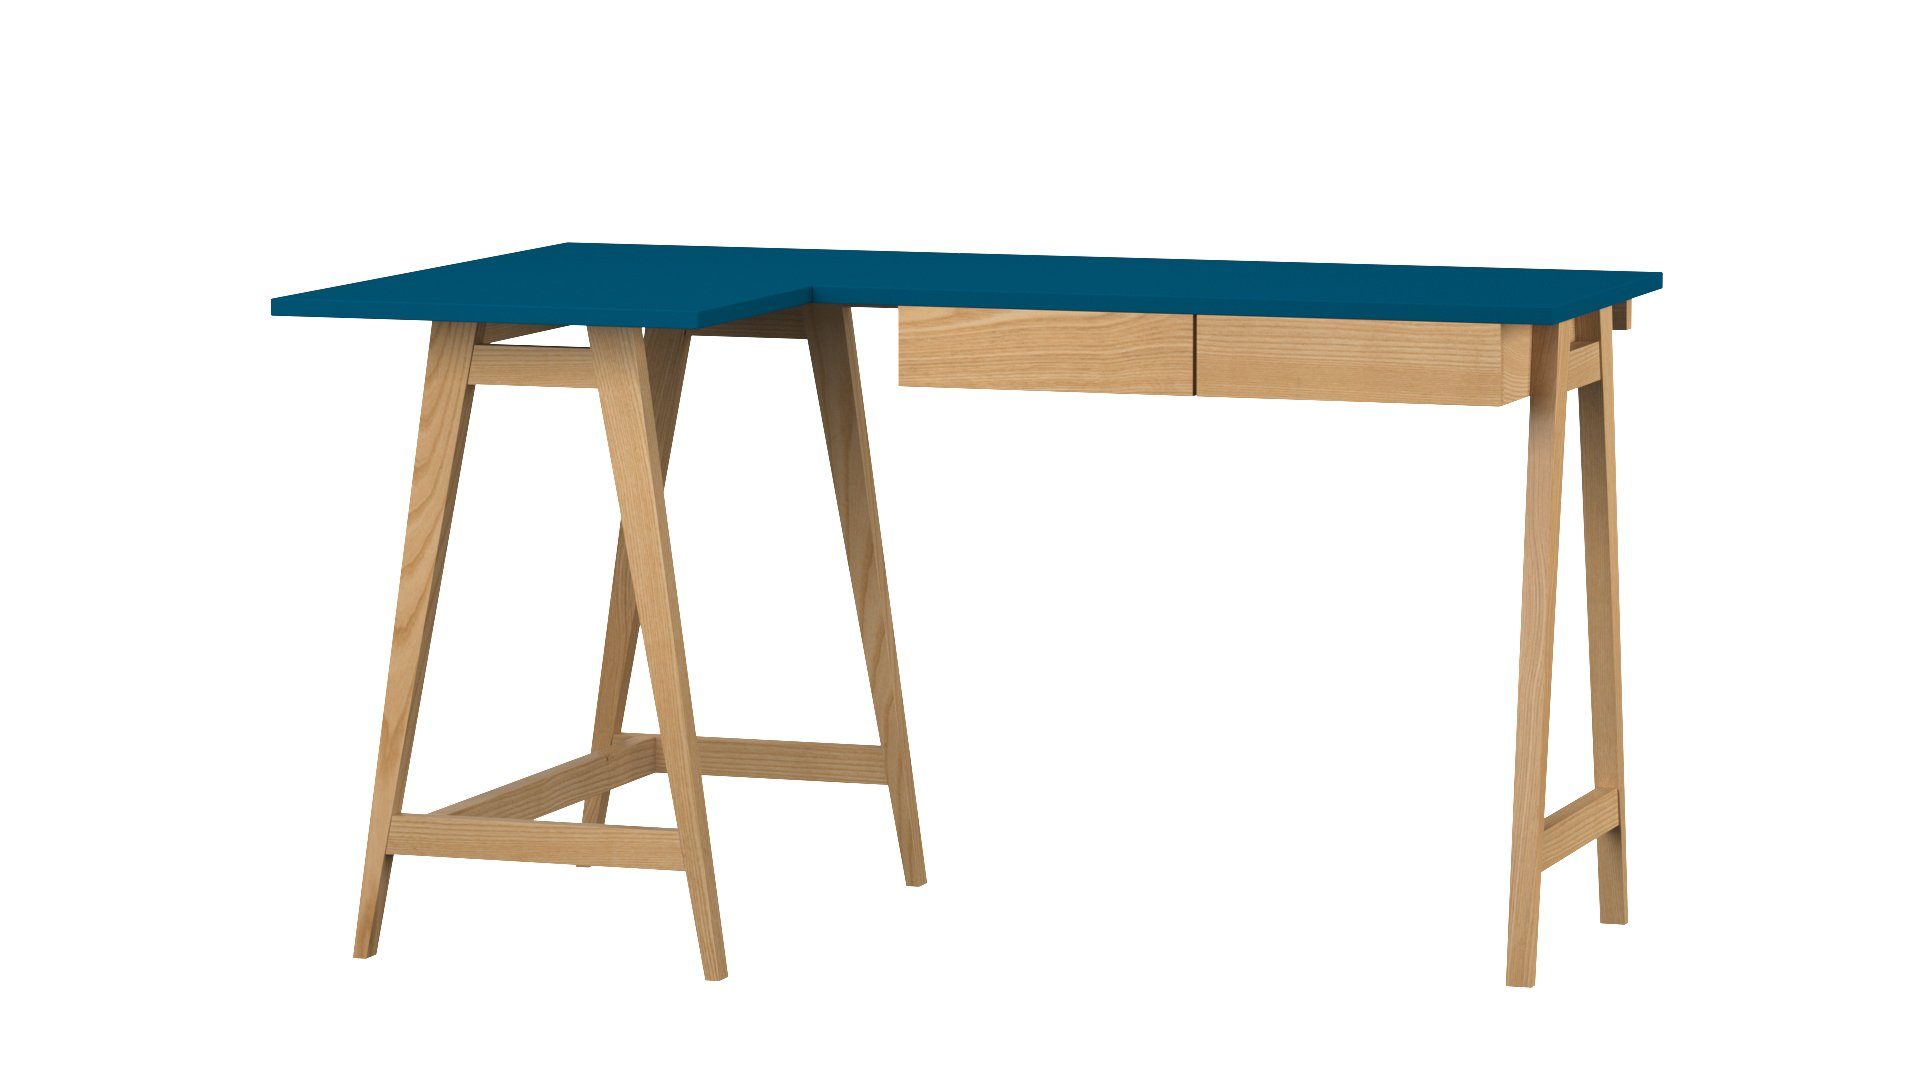 Siblo Schreibtisch Eckschreibtisch Katia mit Schubladen - Moderner Schreibtisch - minimalistisches Design - Kinderzimmer - Jugendzimmer - MDF-Platte - Eschenholz (Eckschreibtisch Katia mit Schubladen) Blau